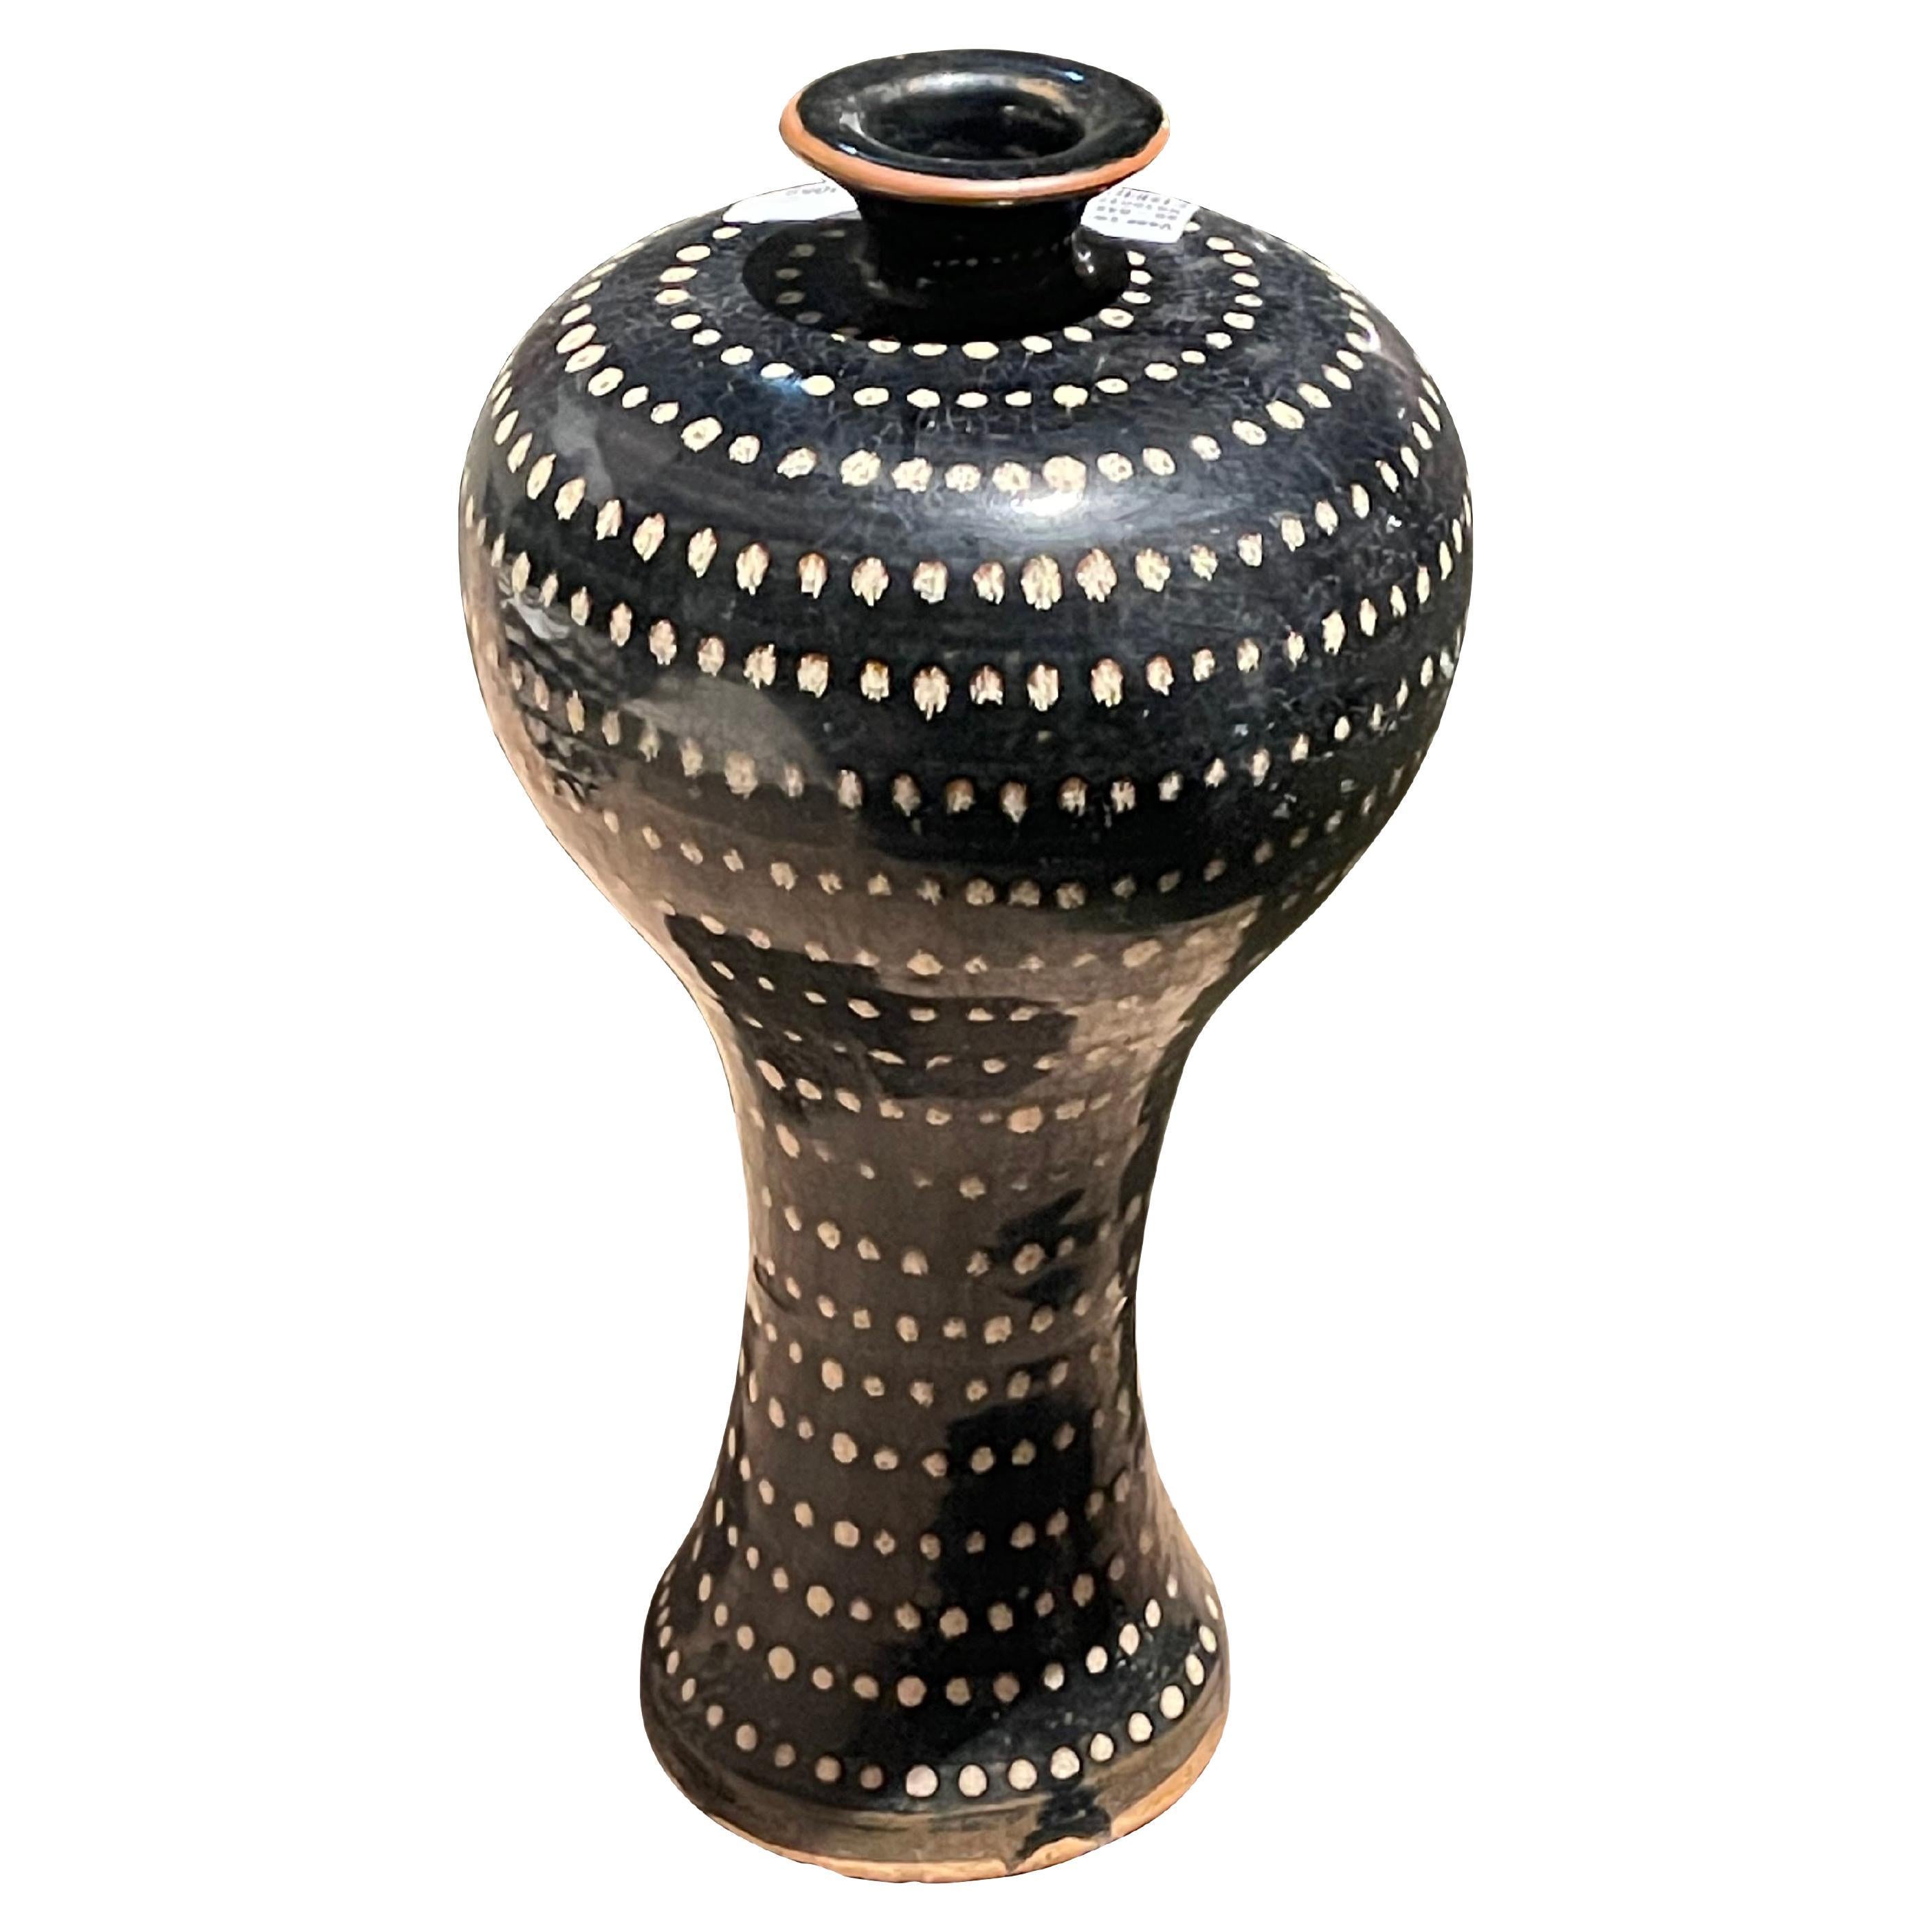 Vase contemporain chinois à fond noir avec petits points blancs peints à la main.
Forme incurvée du sommet.
